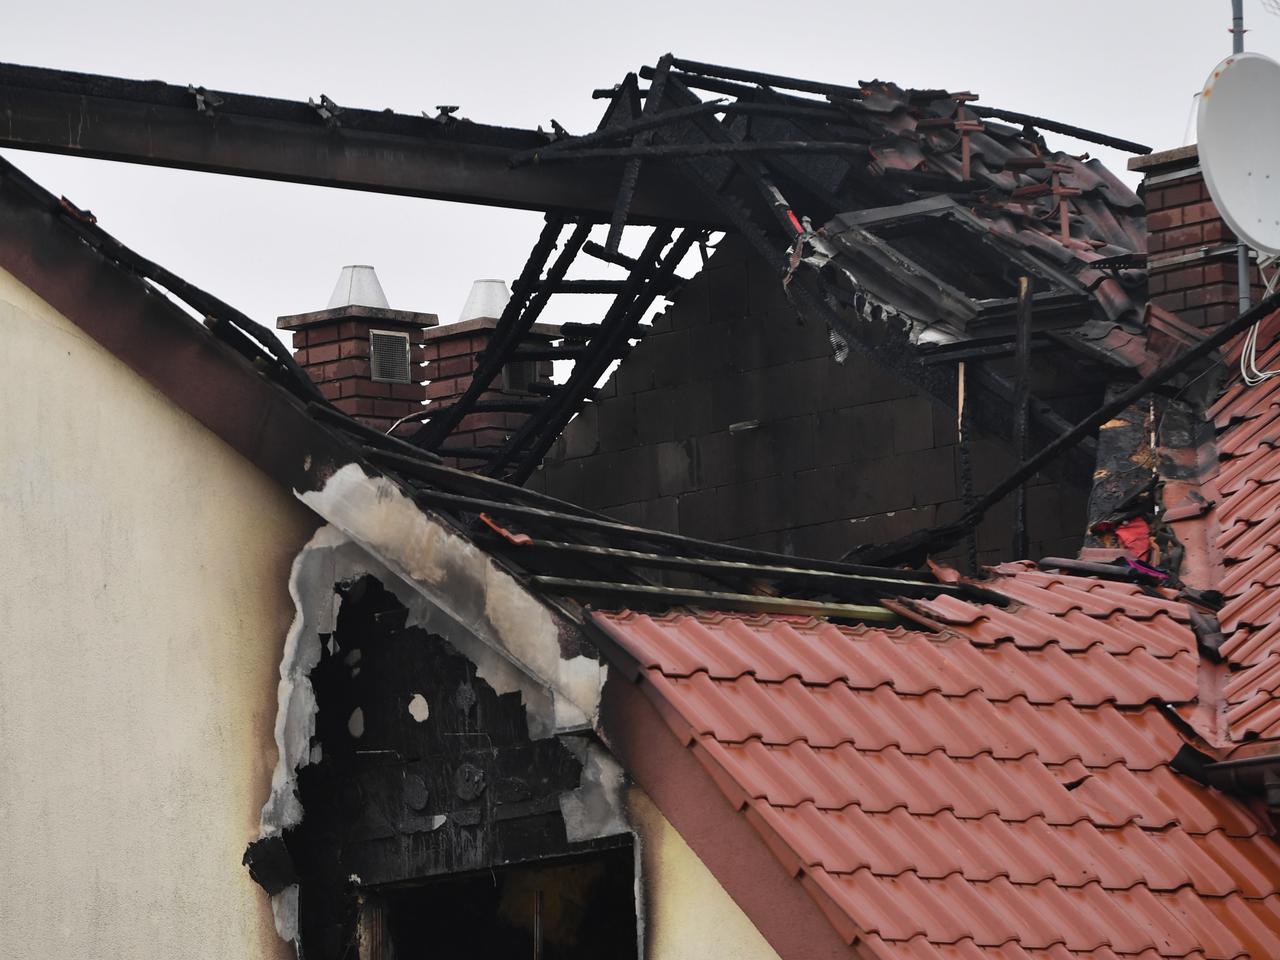 Tragiczny pożar na Krzekowie. Nie żyje dziecko, które strażacy wyciągali z płomieni [ZDJĘCIA]